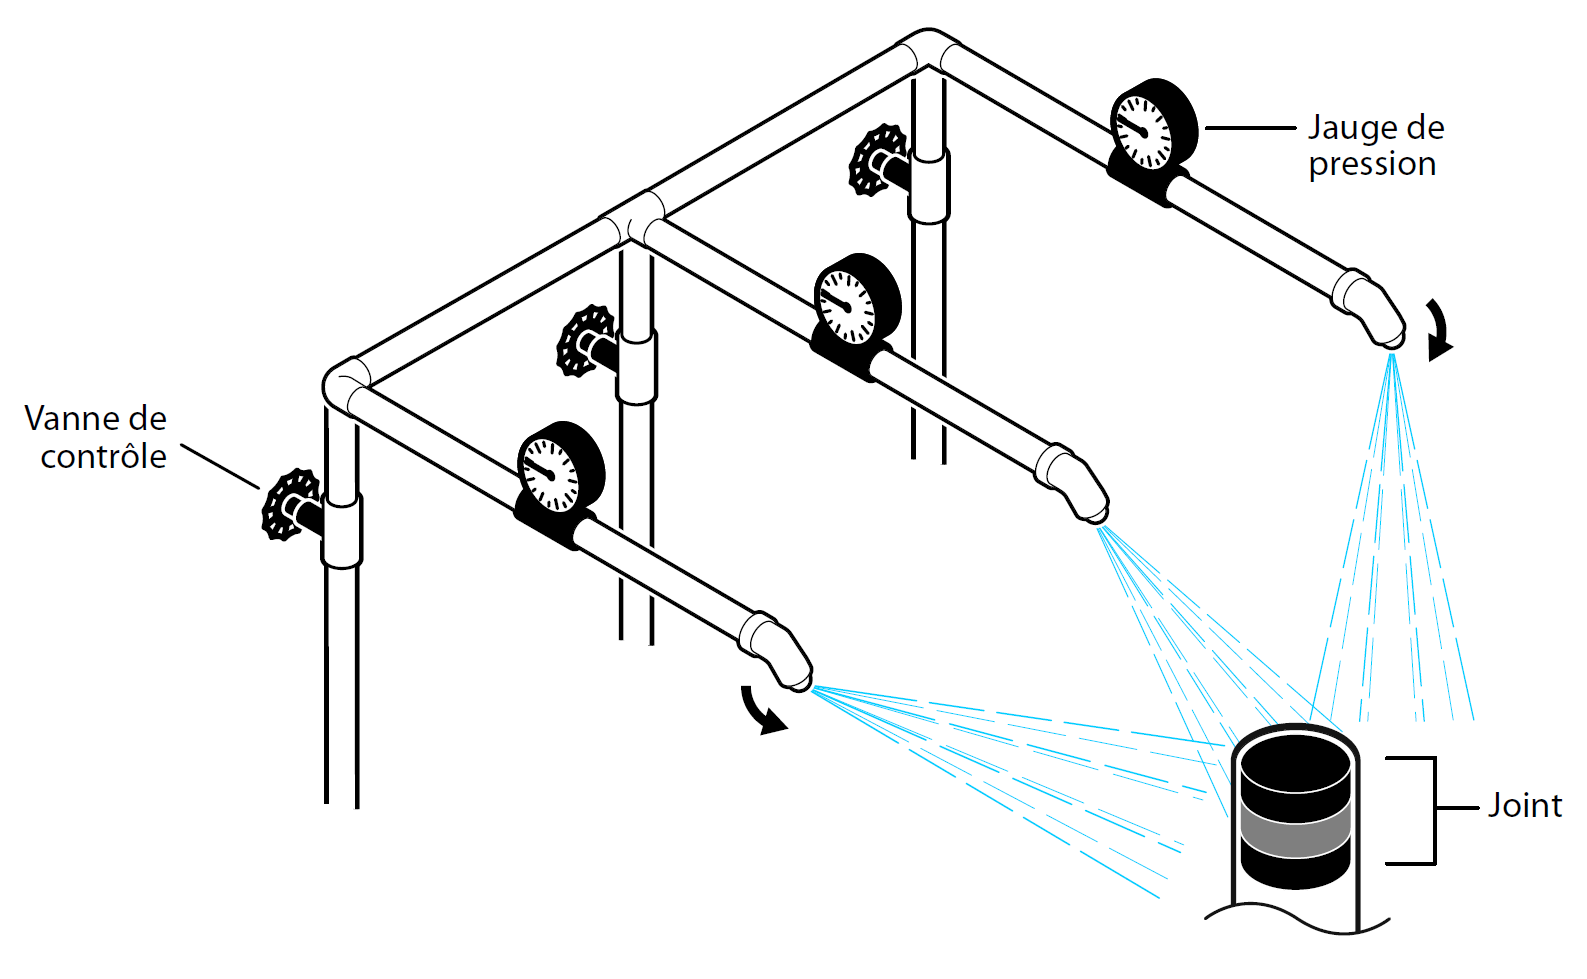 Illustration légendée d'un appareil hydrostatique avec des jauges de pression